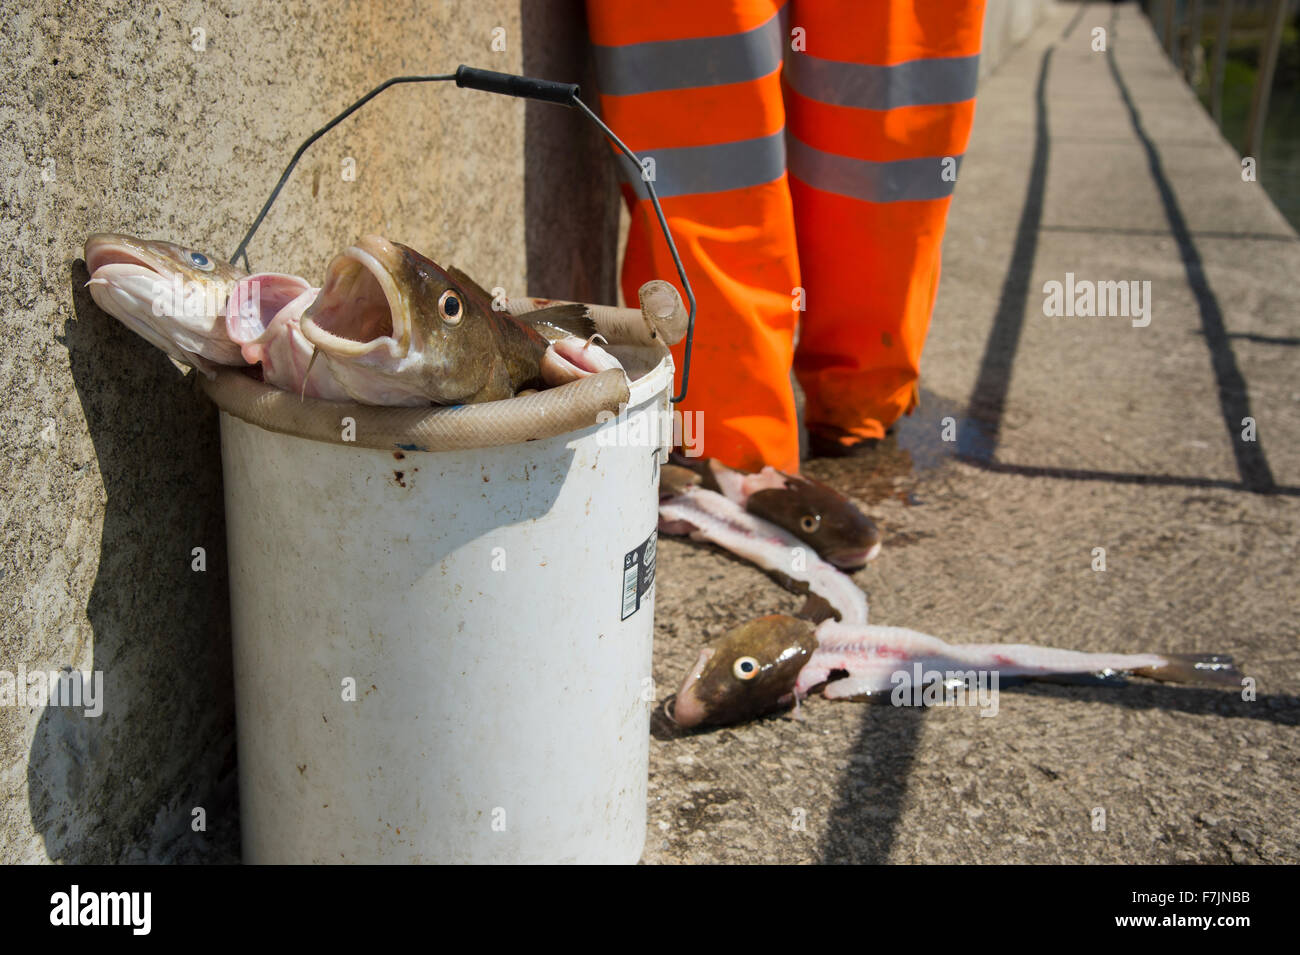 Close-up of fresh captures de morue morte dans une benne, prêt à être détruit par le pêcheur debout au-delà - Staithes Harbour, North Yorkshire, GB, au Royaume-Uni. Banque D'Images